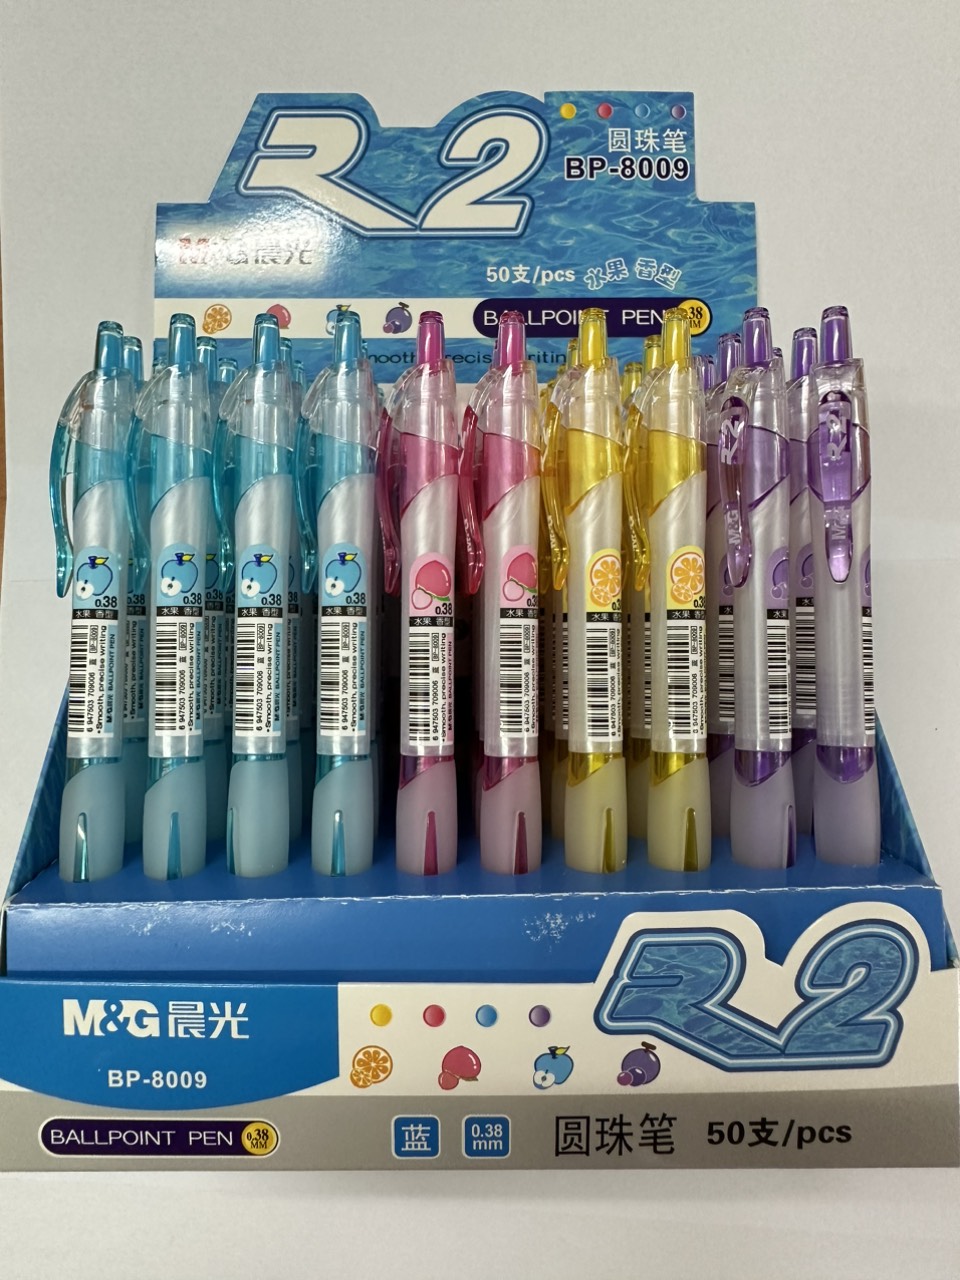 Bút Bi BP8009 màu xanh (0.38)